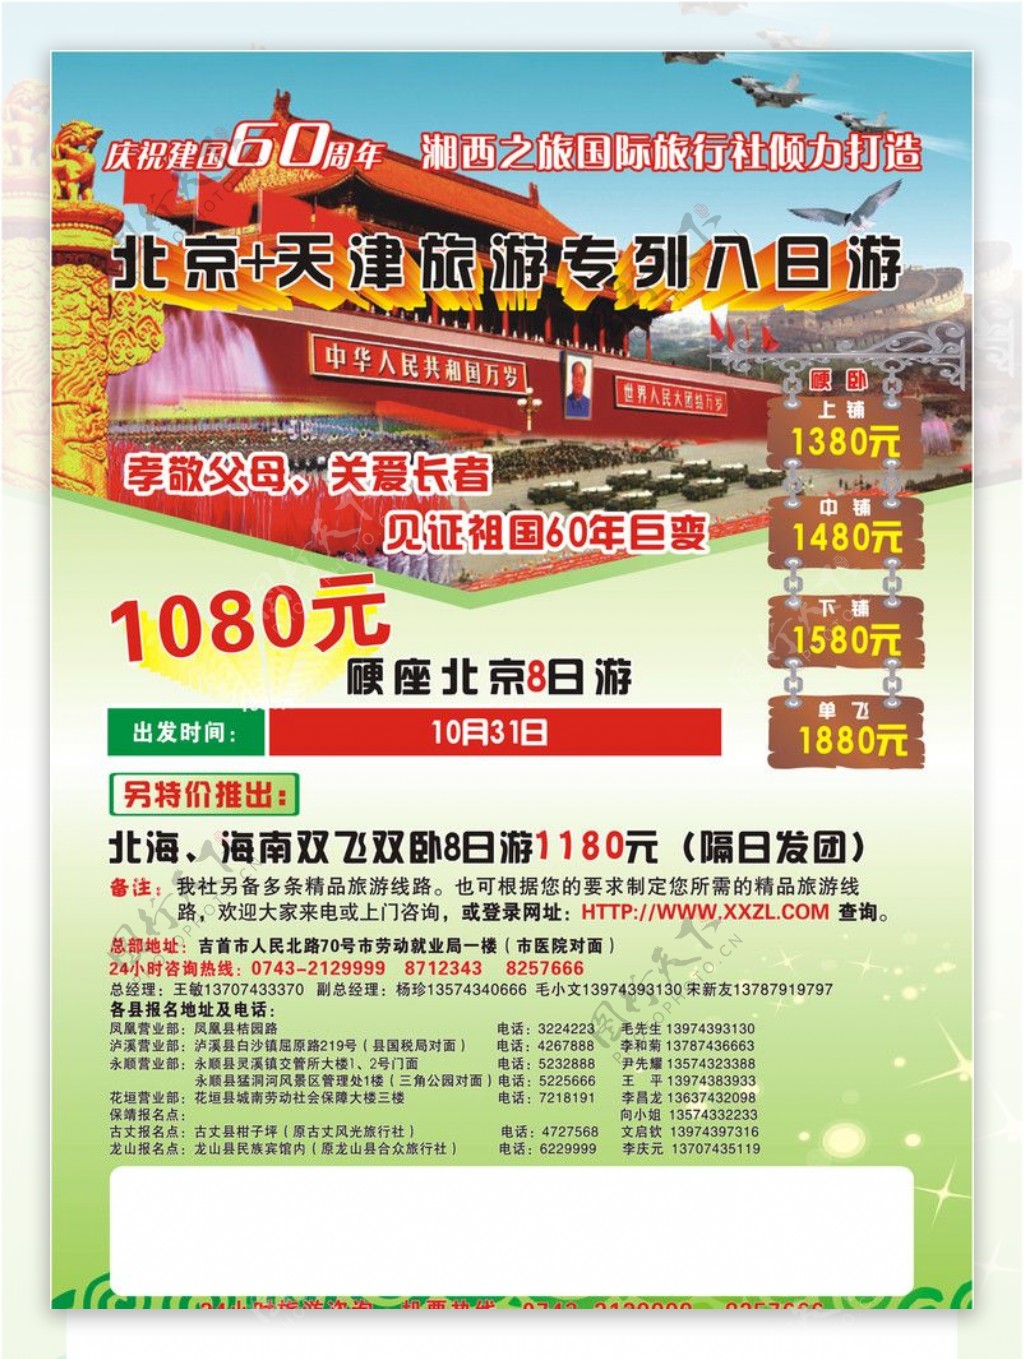 旅游北京天津湘西之旅旅行社花纹木头绿色模板海报宣传图片